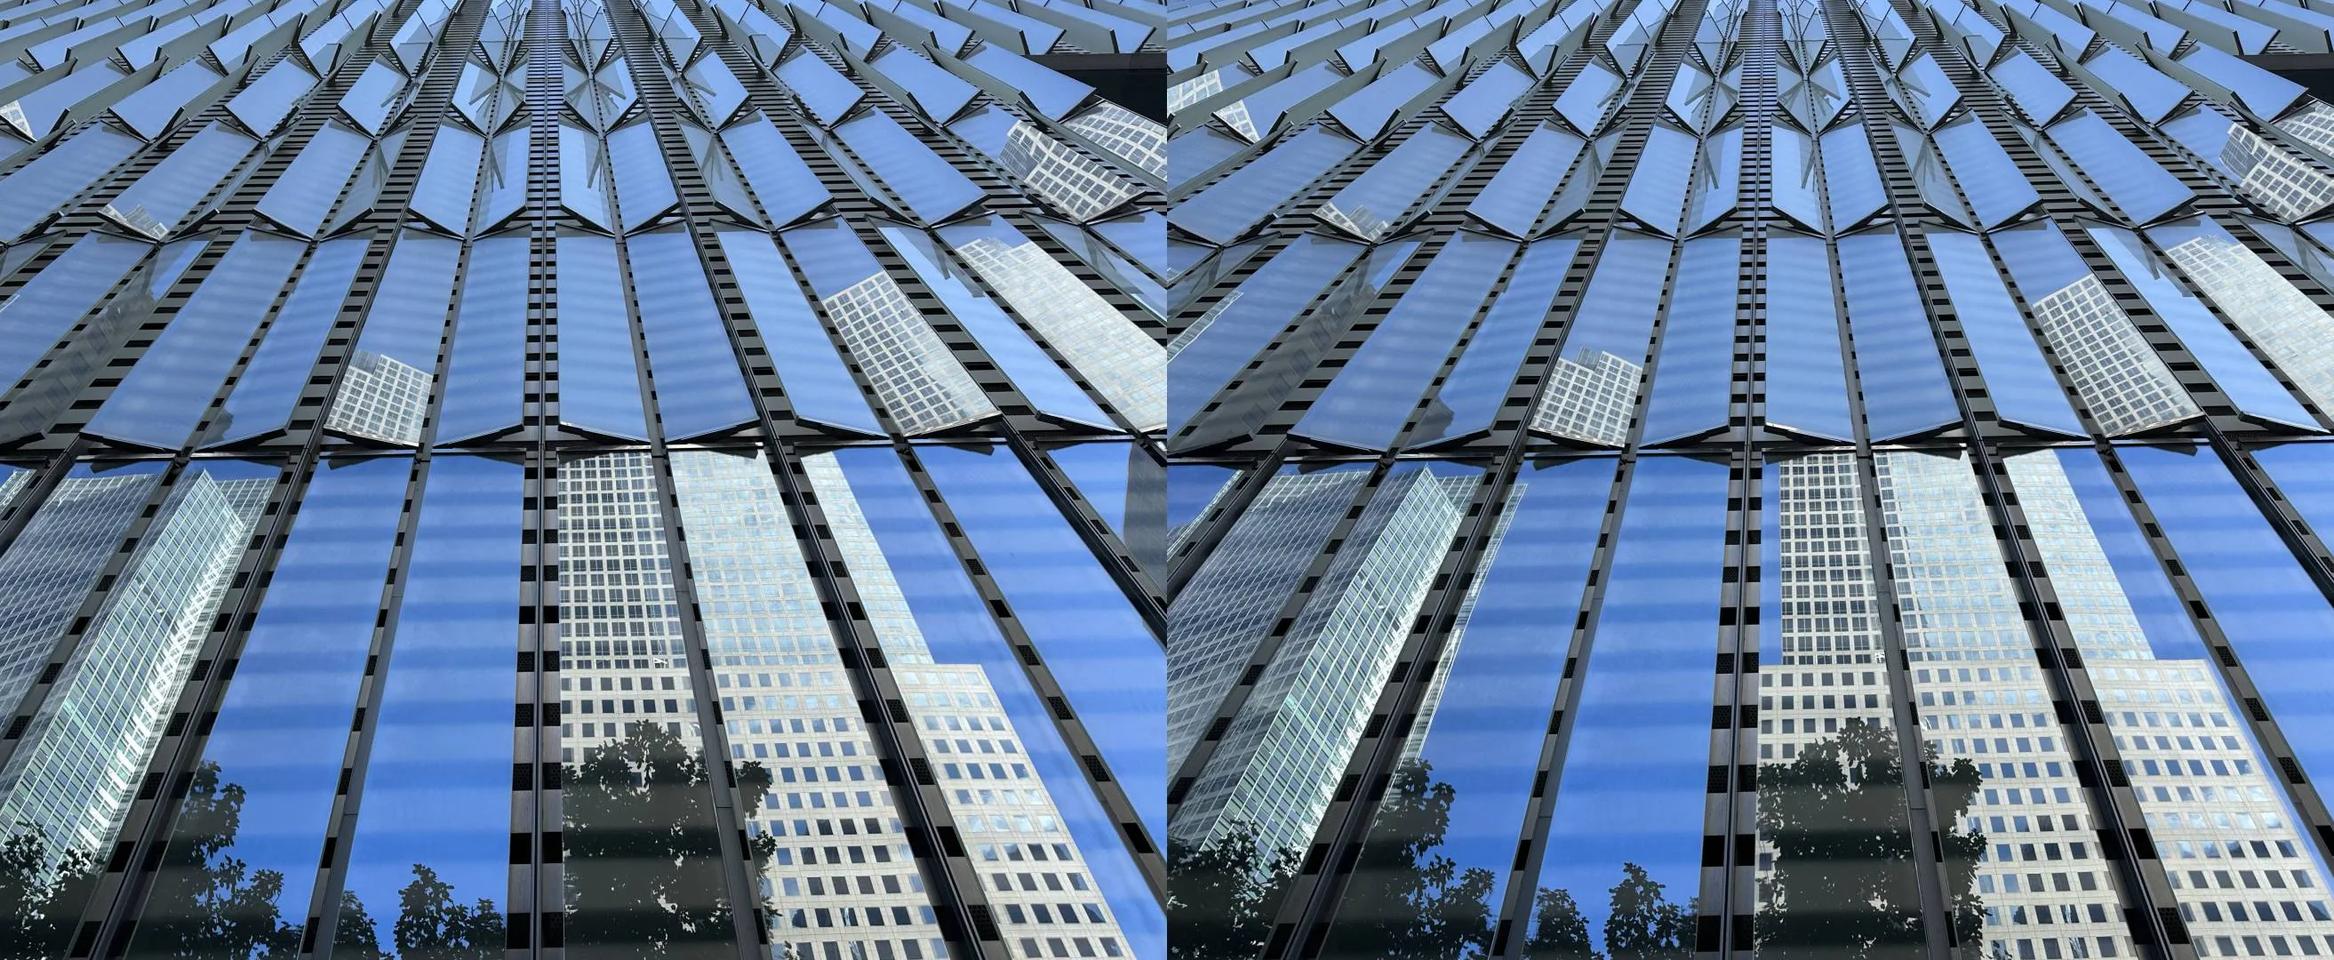 Manhattan glass reflections